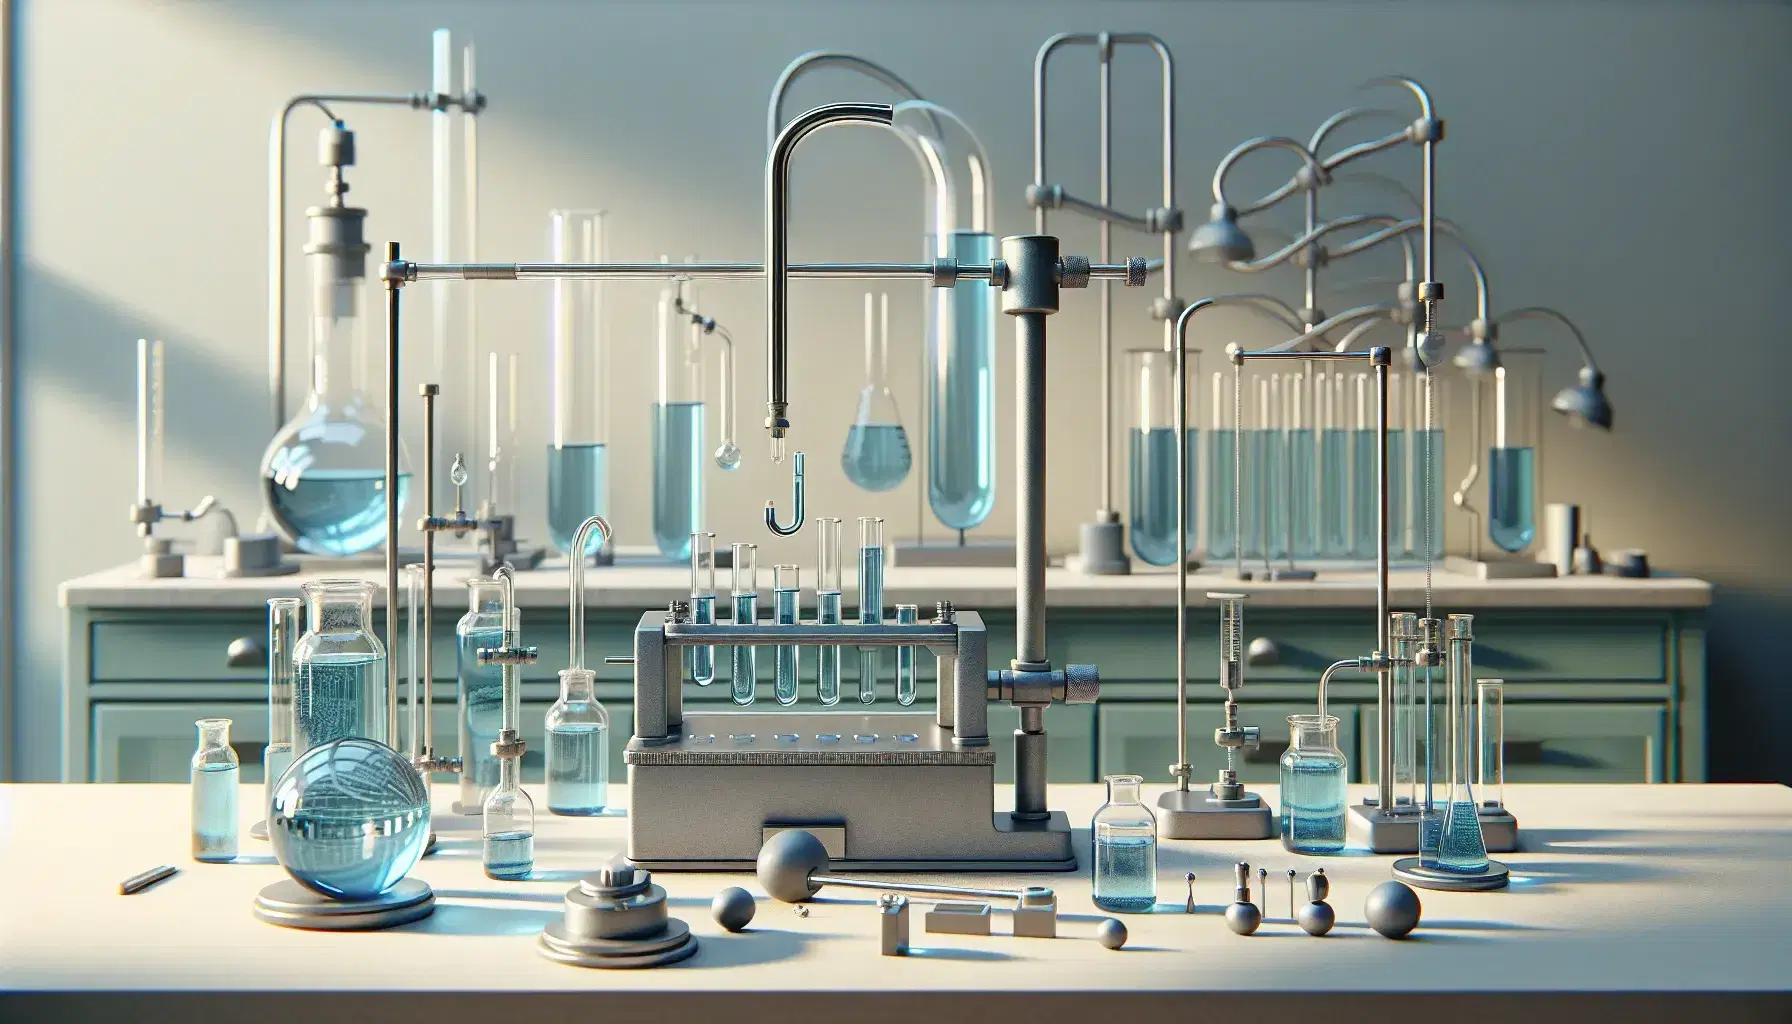 Laboratorio de física con equipo hidráulico, incluyendo un manómetro en U con líquido azul, cilindro de presión, bomba metálica y balanza hidrostática con pesas.